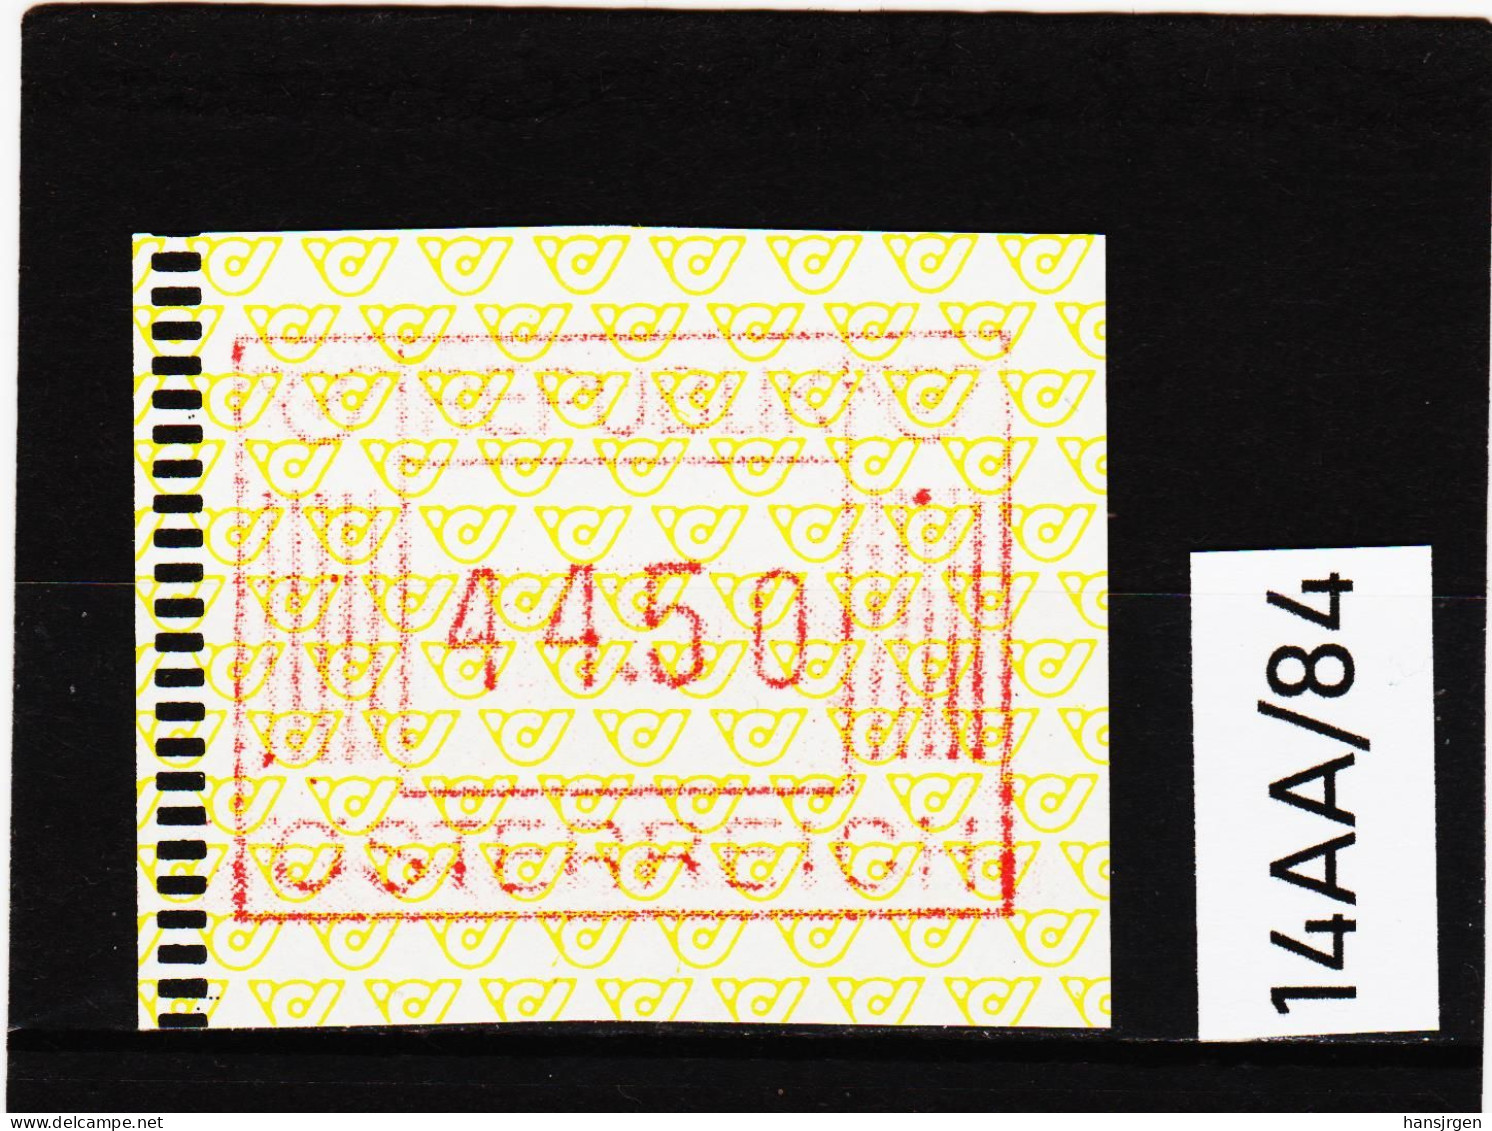 14AA/84  ÖSTERREICH 1983 AUTOMATENMARKEN 1. AUSGABE  44,50 SCHILLING   ** Postfrisch - Automatenmarken [ATM]